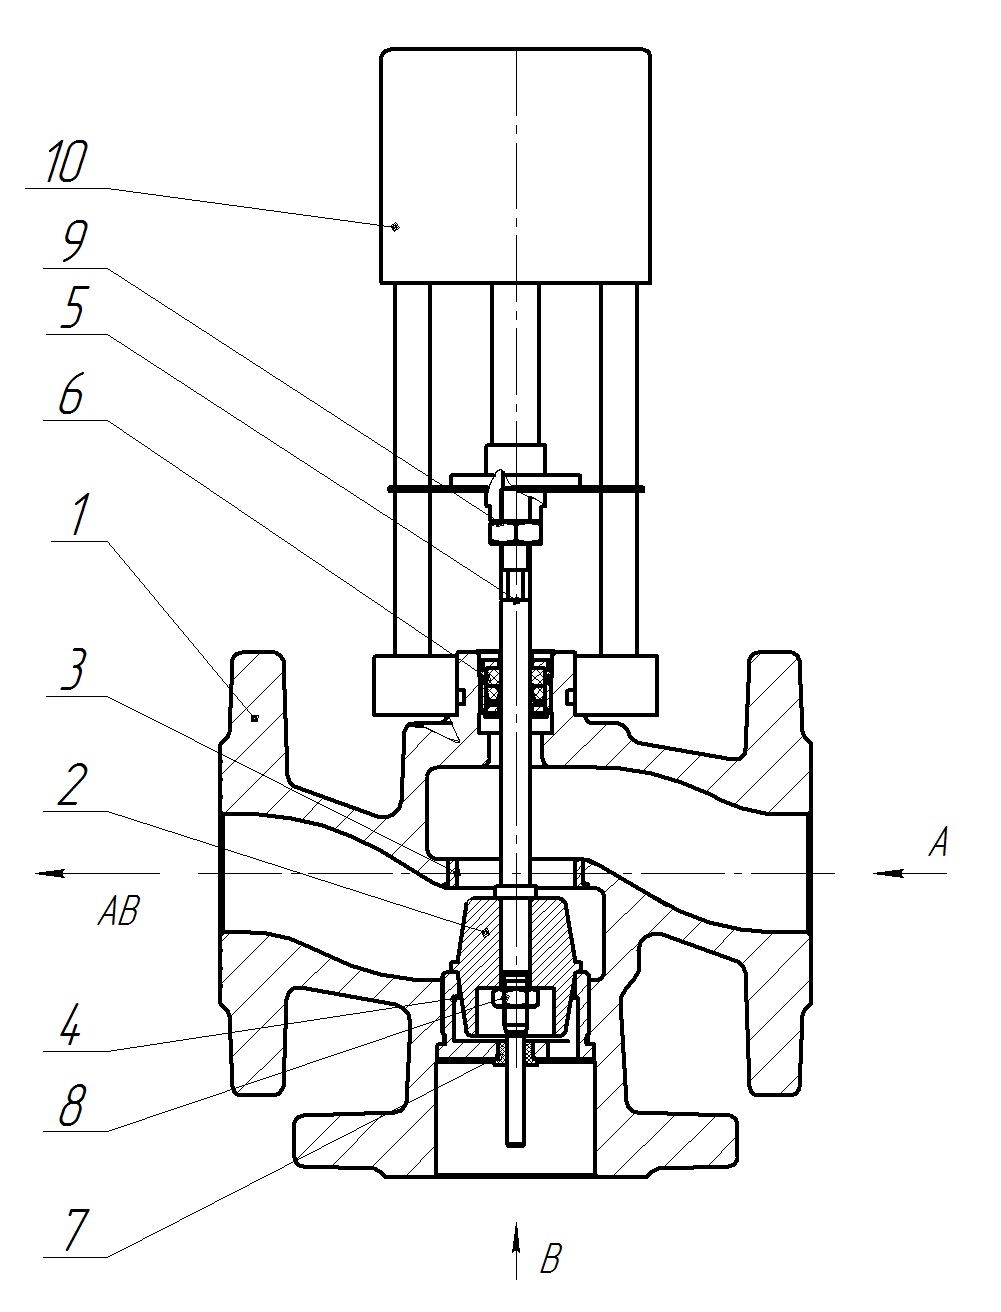 Клапан регулирующий трехходовой разделительный DN.ru 23ч901нж Ду25 Ру16 Kvs10 серый чугун СЧ20, фланцевый, Tmax до 150°С с электроприводом Катрабел TW-500-XD220